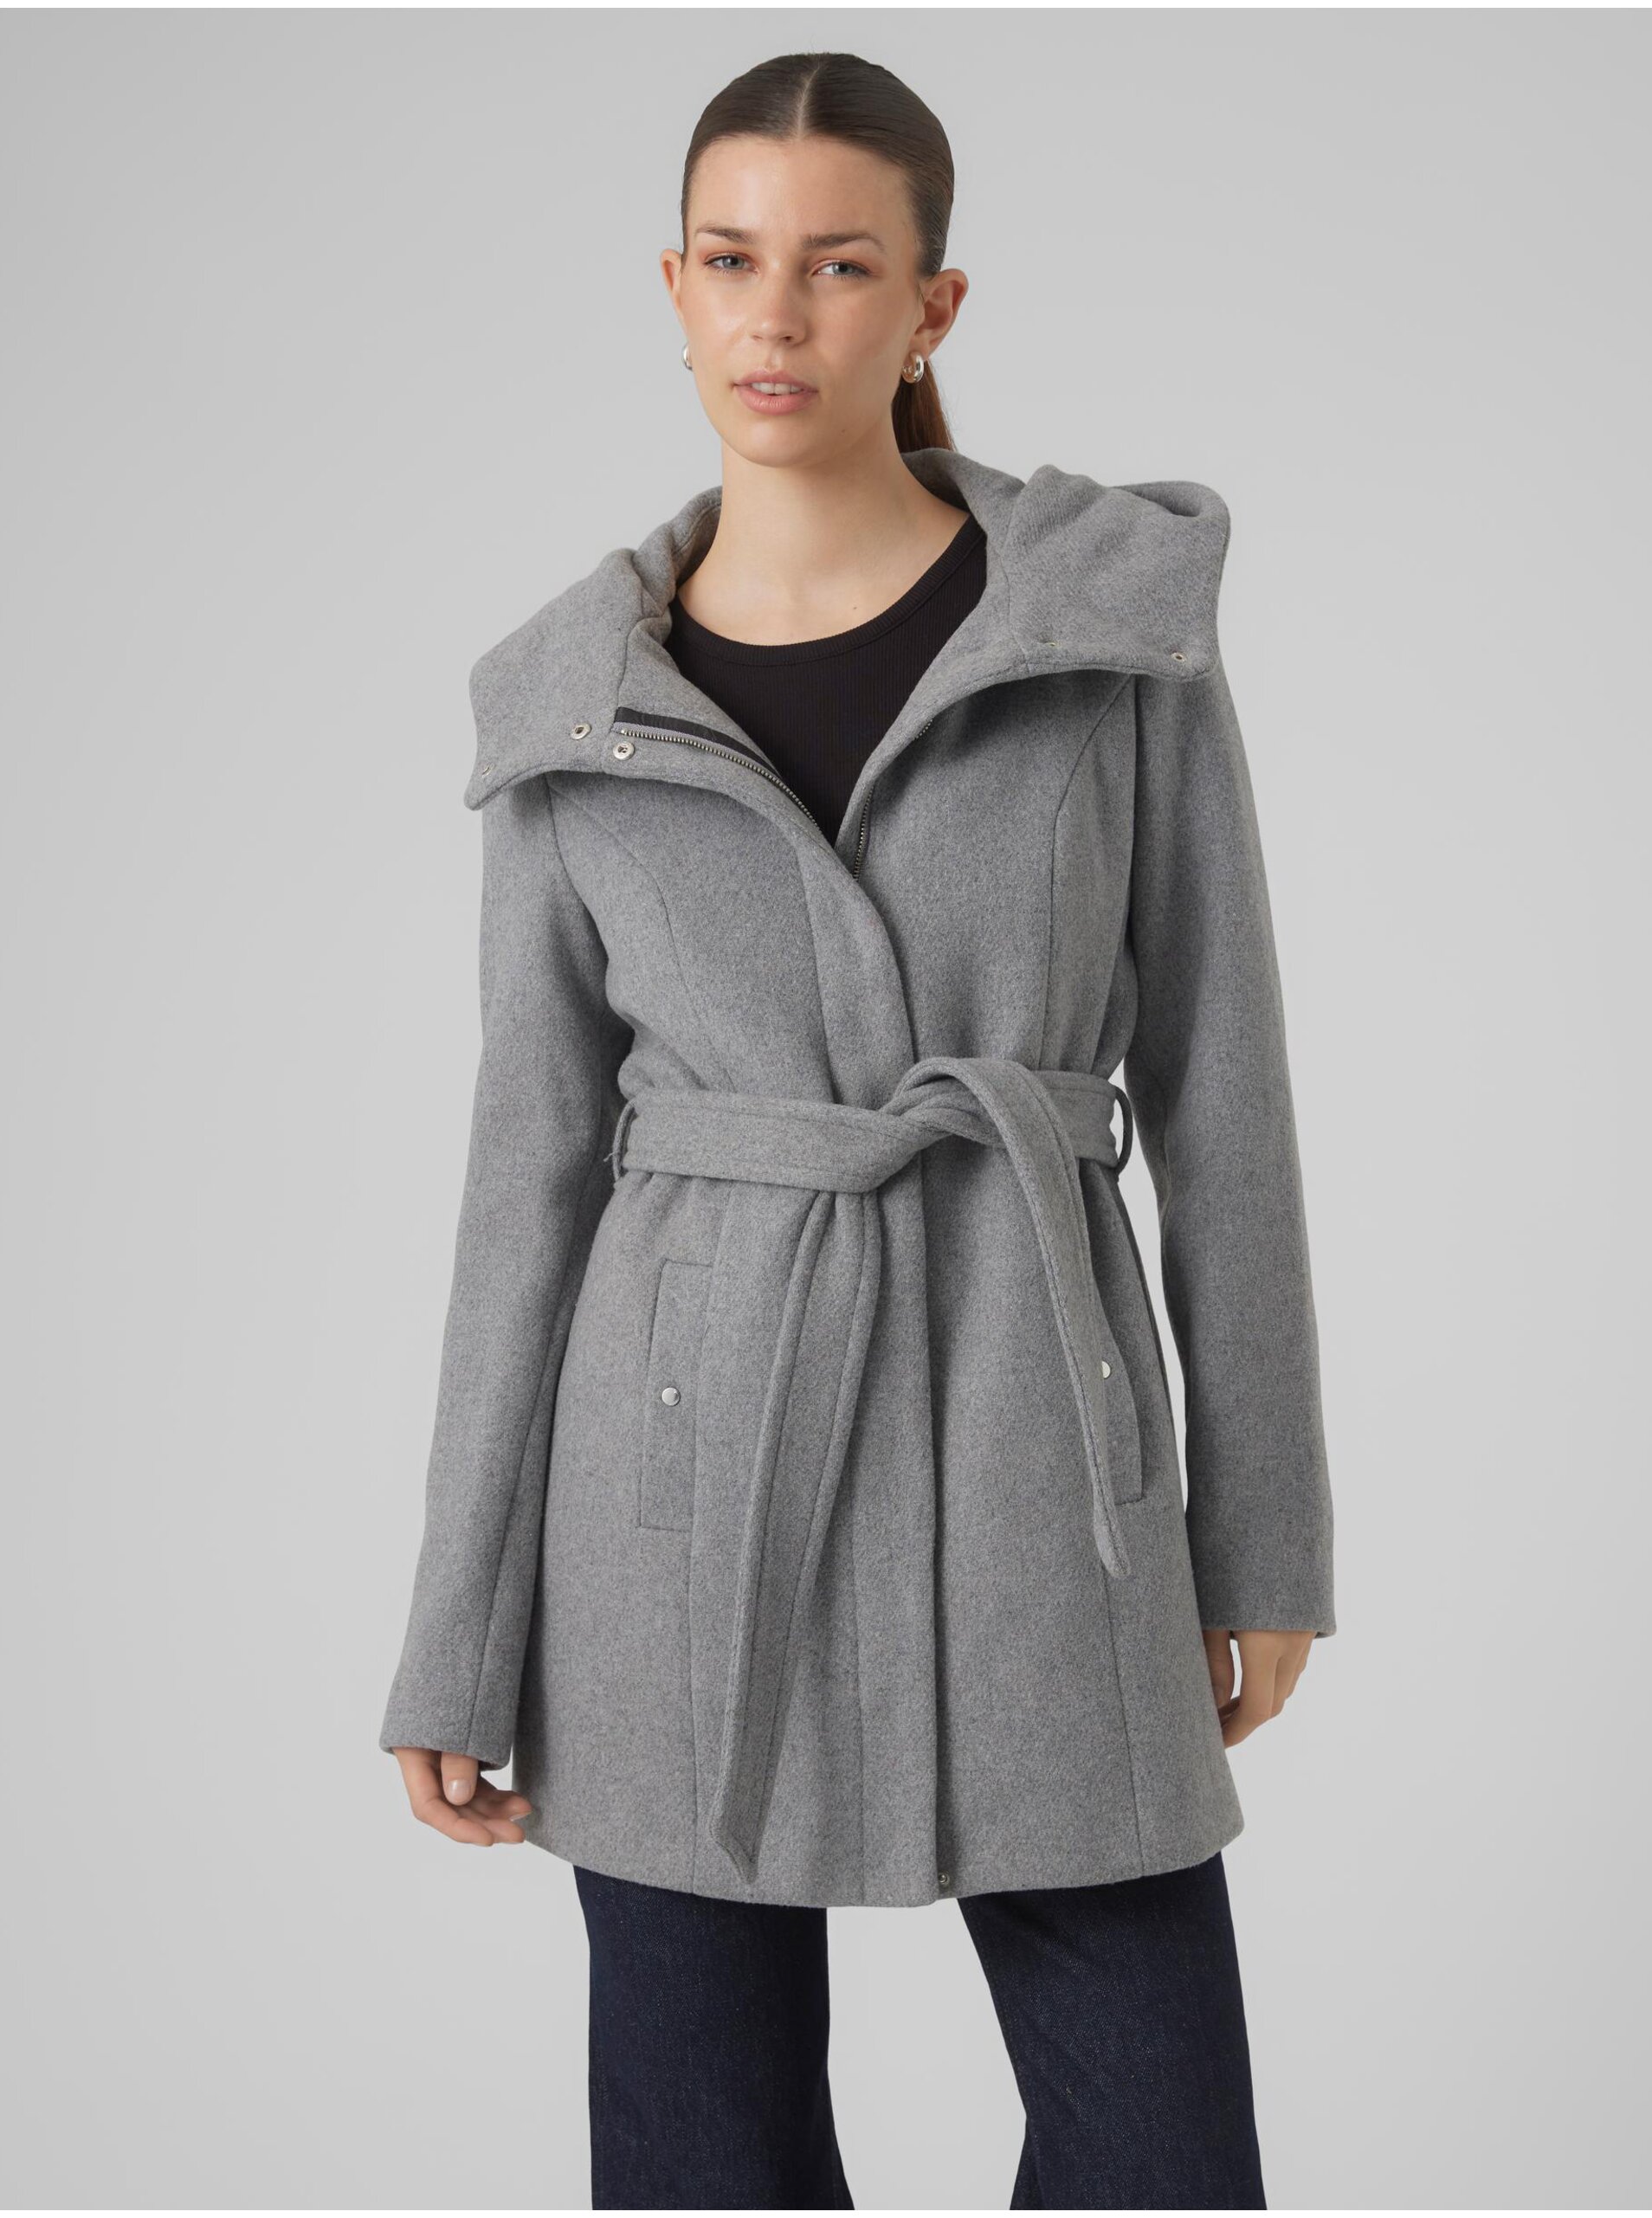 Women's grey coat VERO MODA Classliva - Women